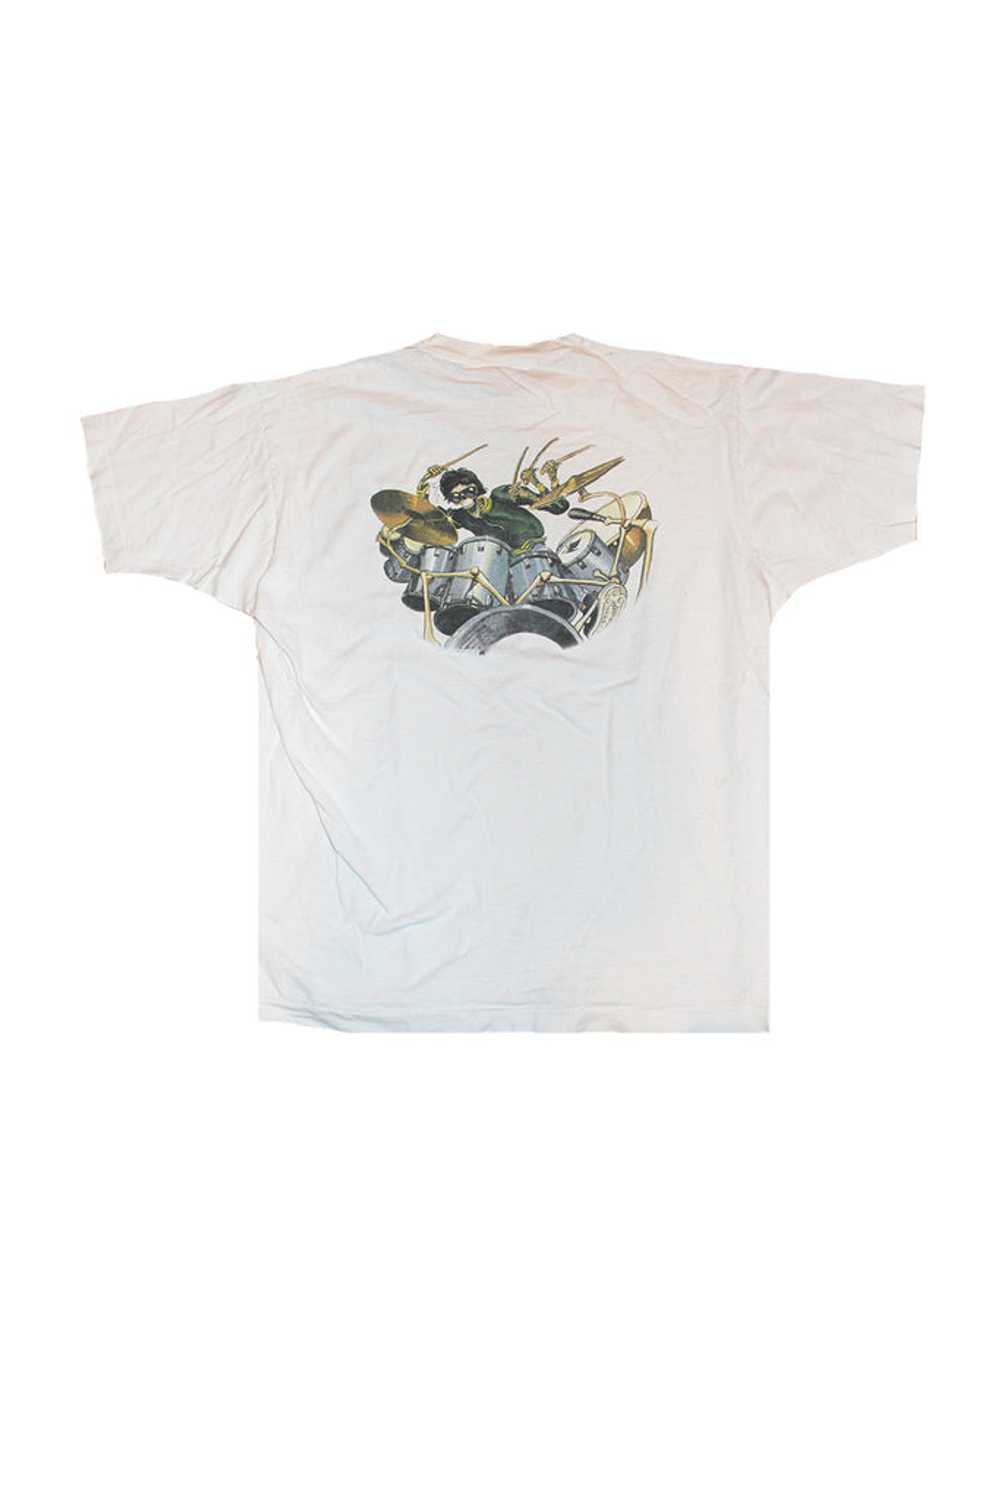 Vintage 80's Grateful Dead Rhythm Devils T-Shirt - image 4